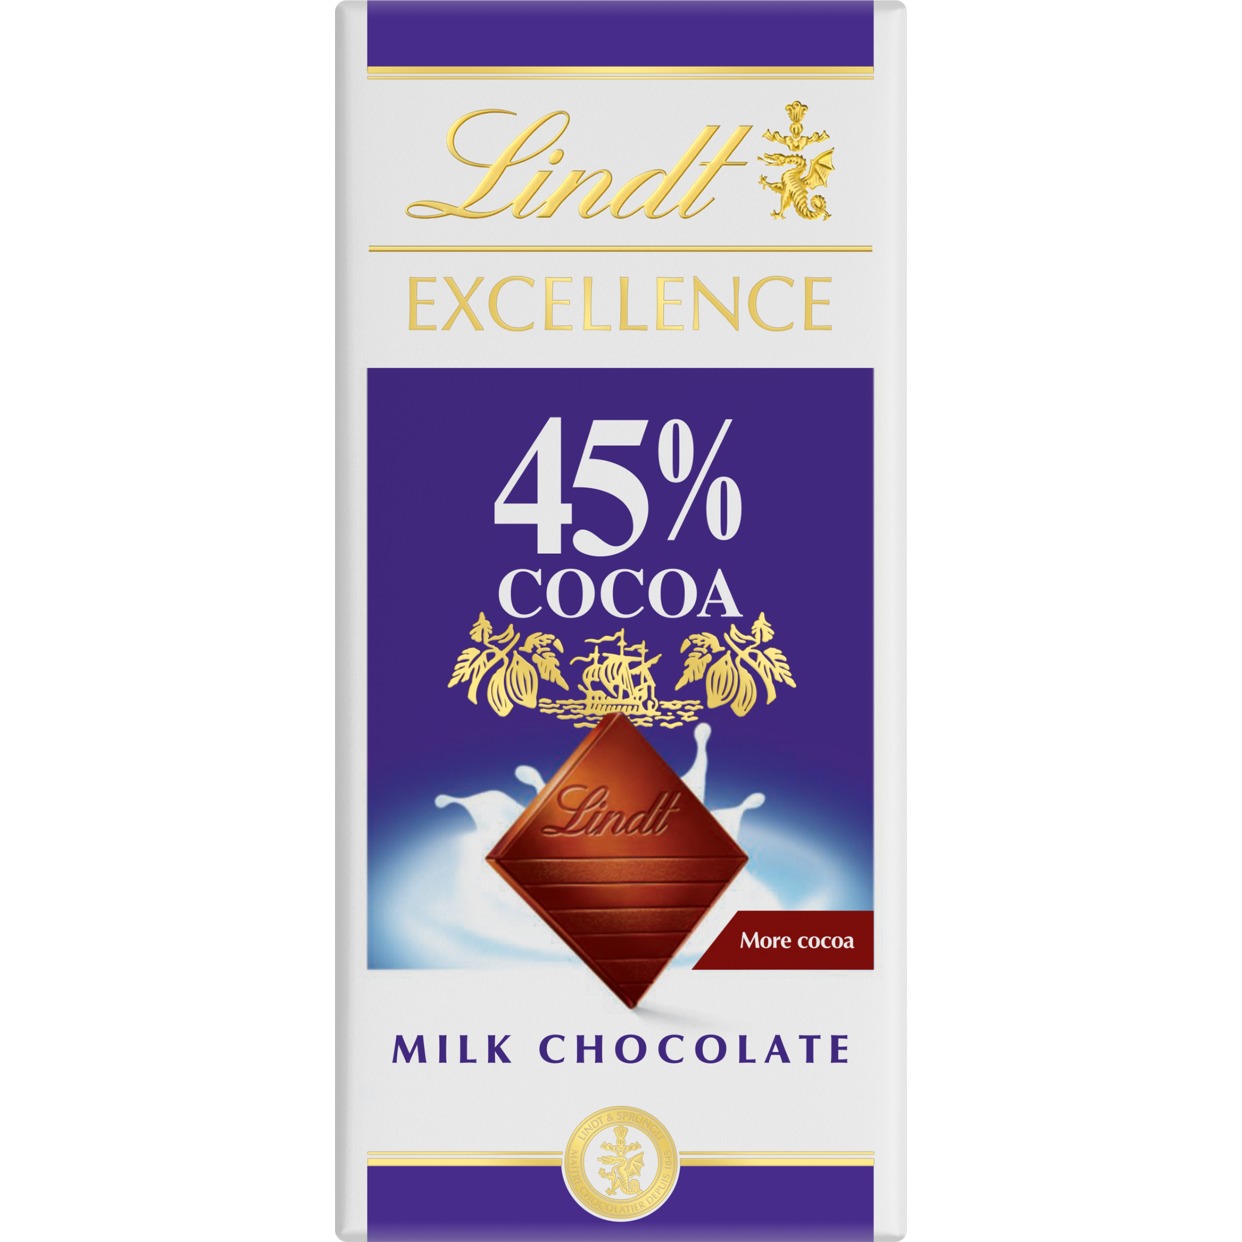 Шоколад Lindt с высоким содержанием молока и какао 45% 80г по акции в Пятерочке